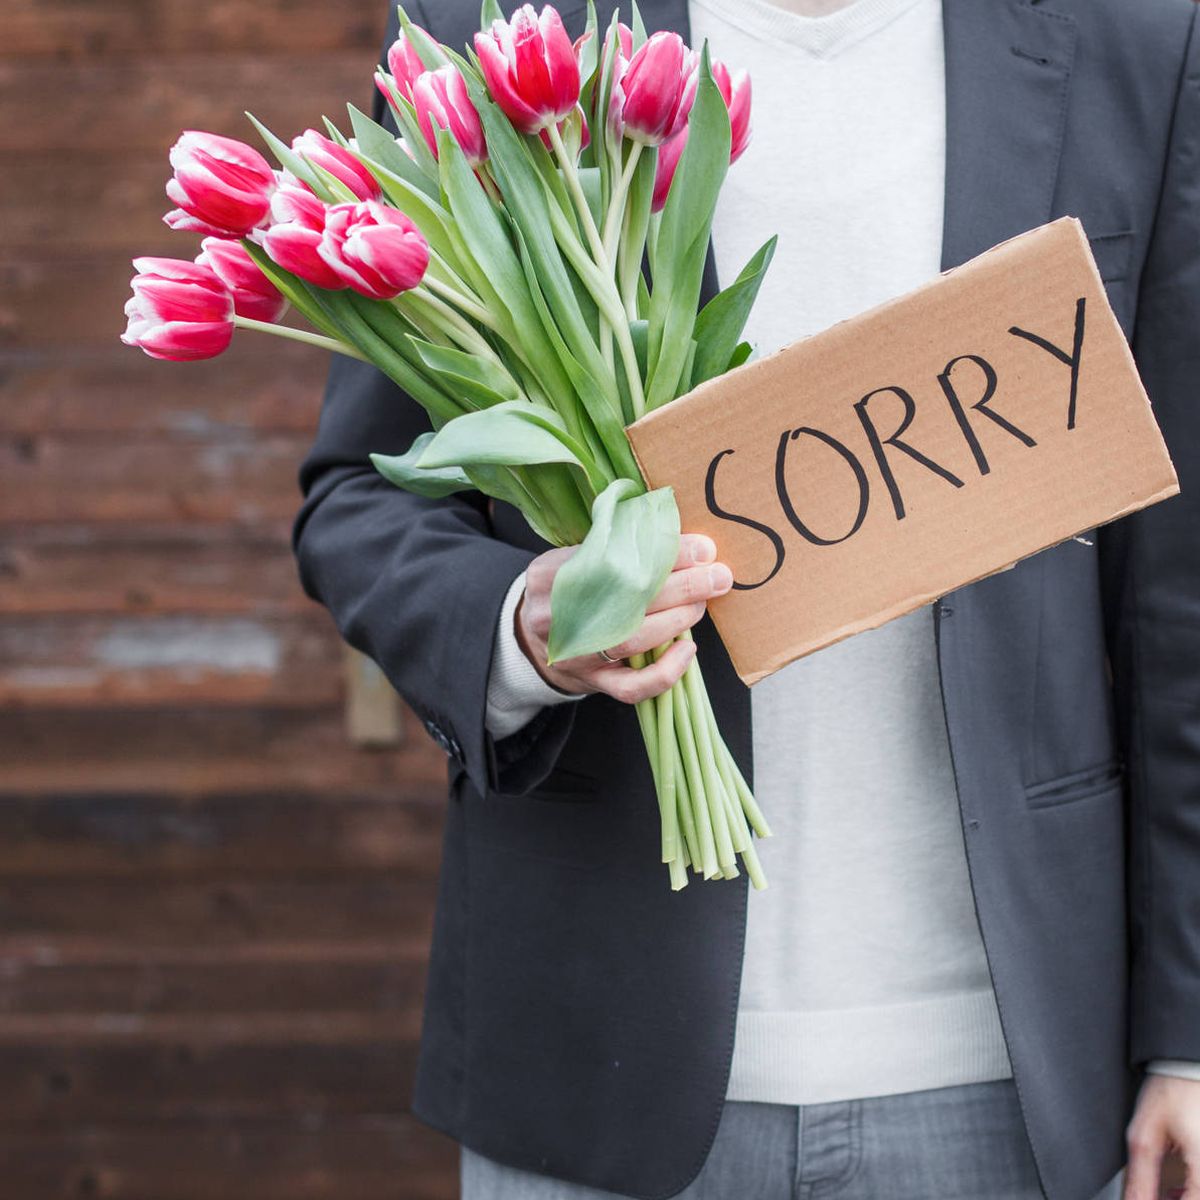 El arte de disculparse: así puedes pedir perdón y quedar como un caballero